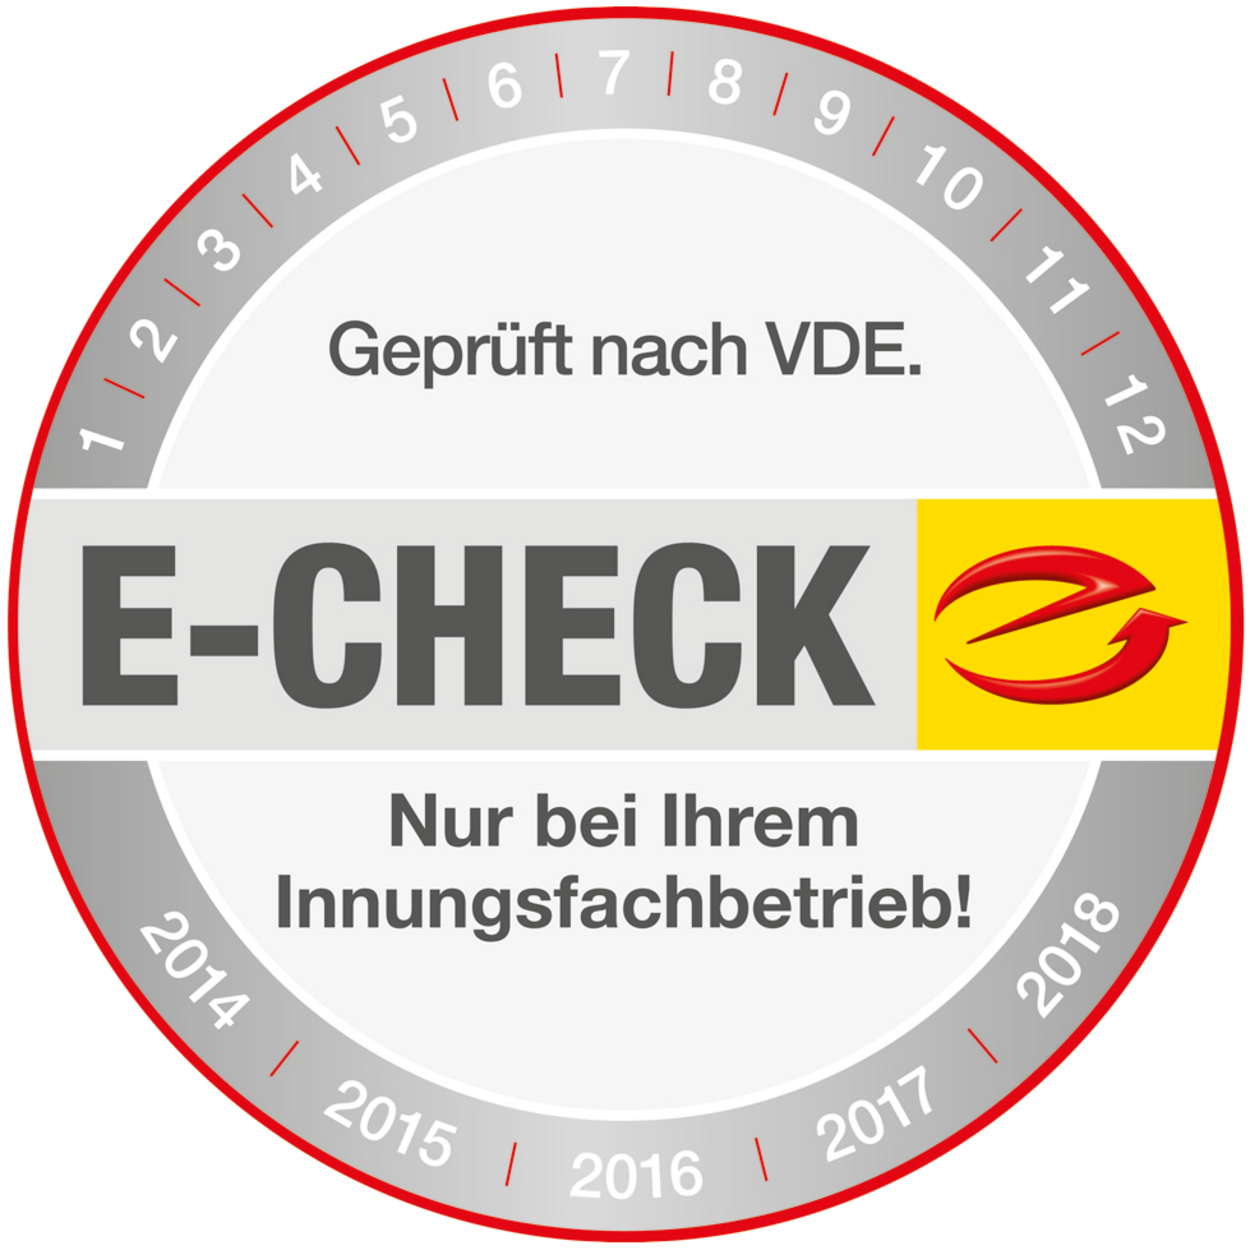 Der E-Check bei Haus- u. Gebäudetechnik Theuermeister in Zeitz